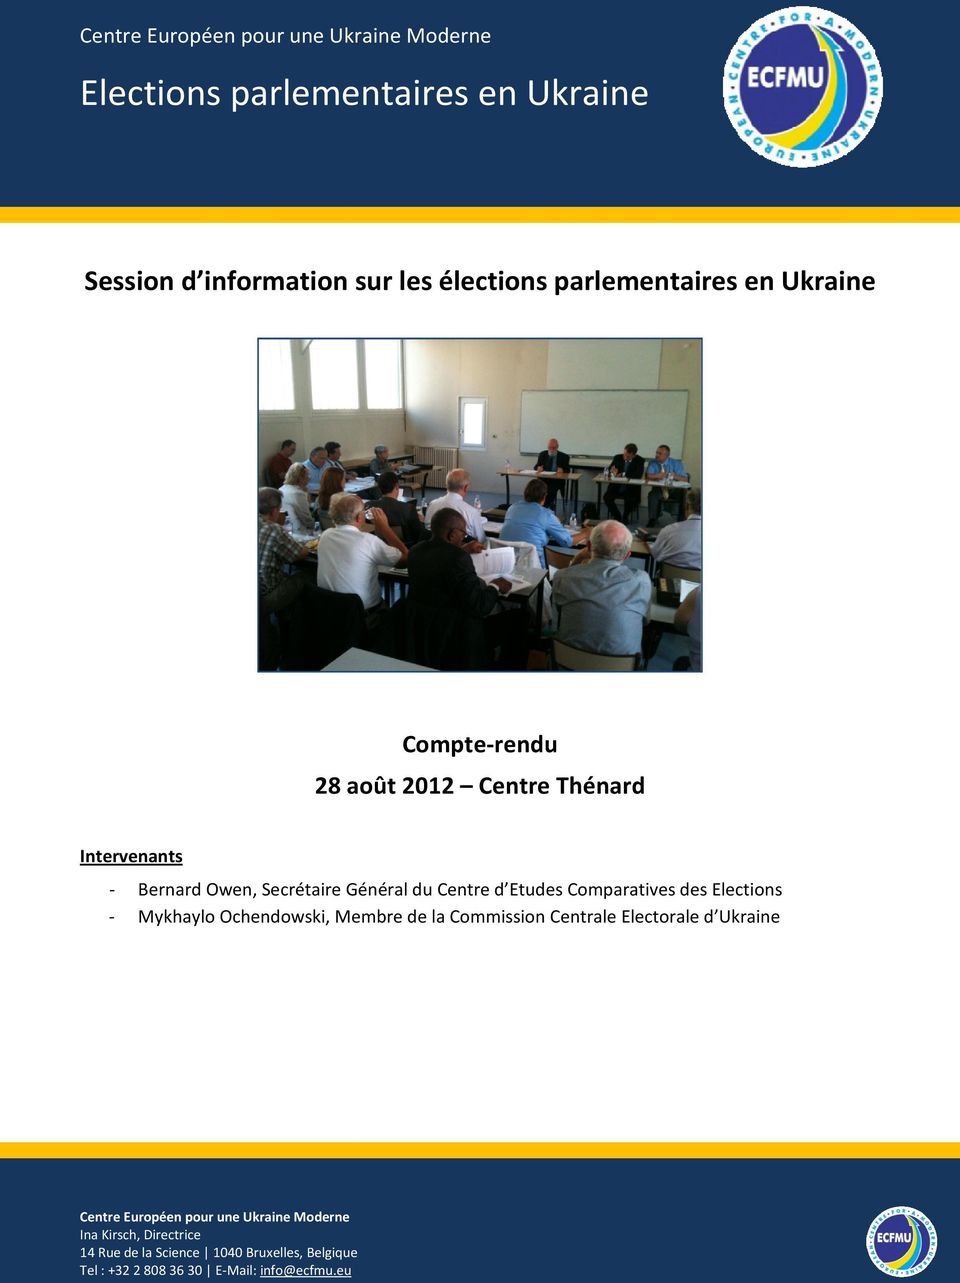 Etudes Comparatives des Elections - Mykhaylo Ochendowski, Membre de la Commission Centrale Electorale d